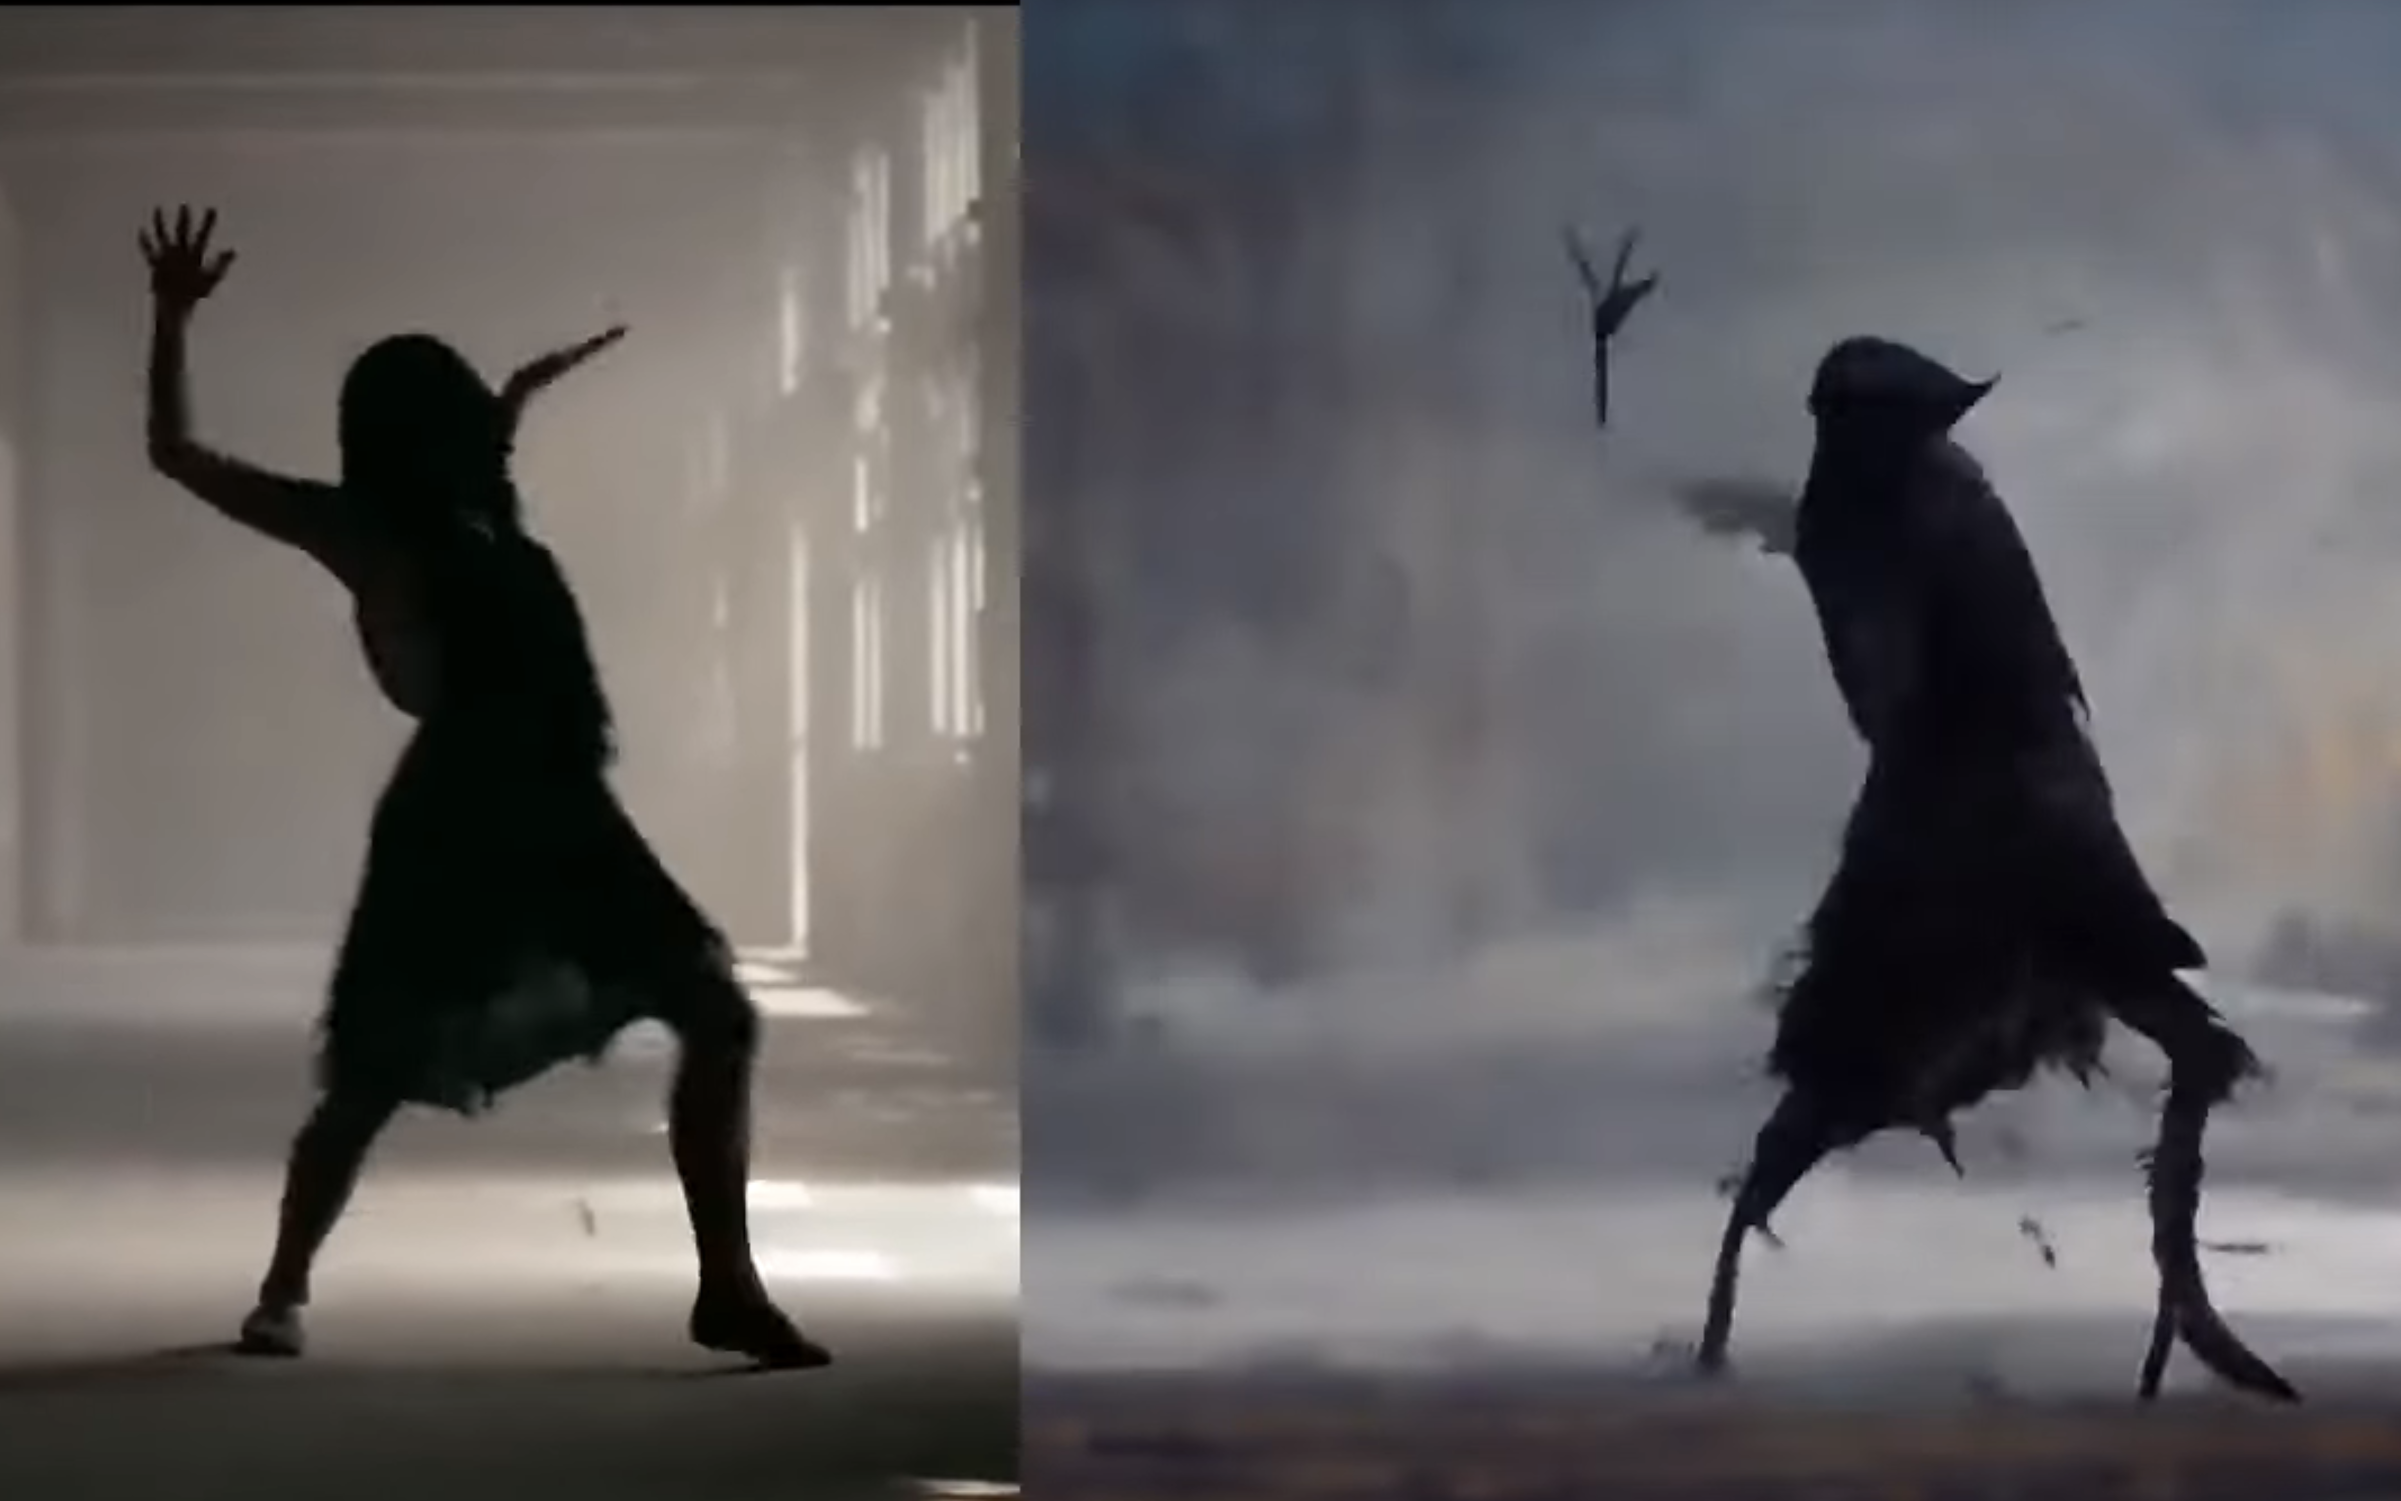 Vergleich mithilfe künstlicher Intelligenz generierten Film "The Crow" mit dem ursprünglichen Tanzvideo